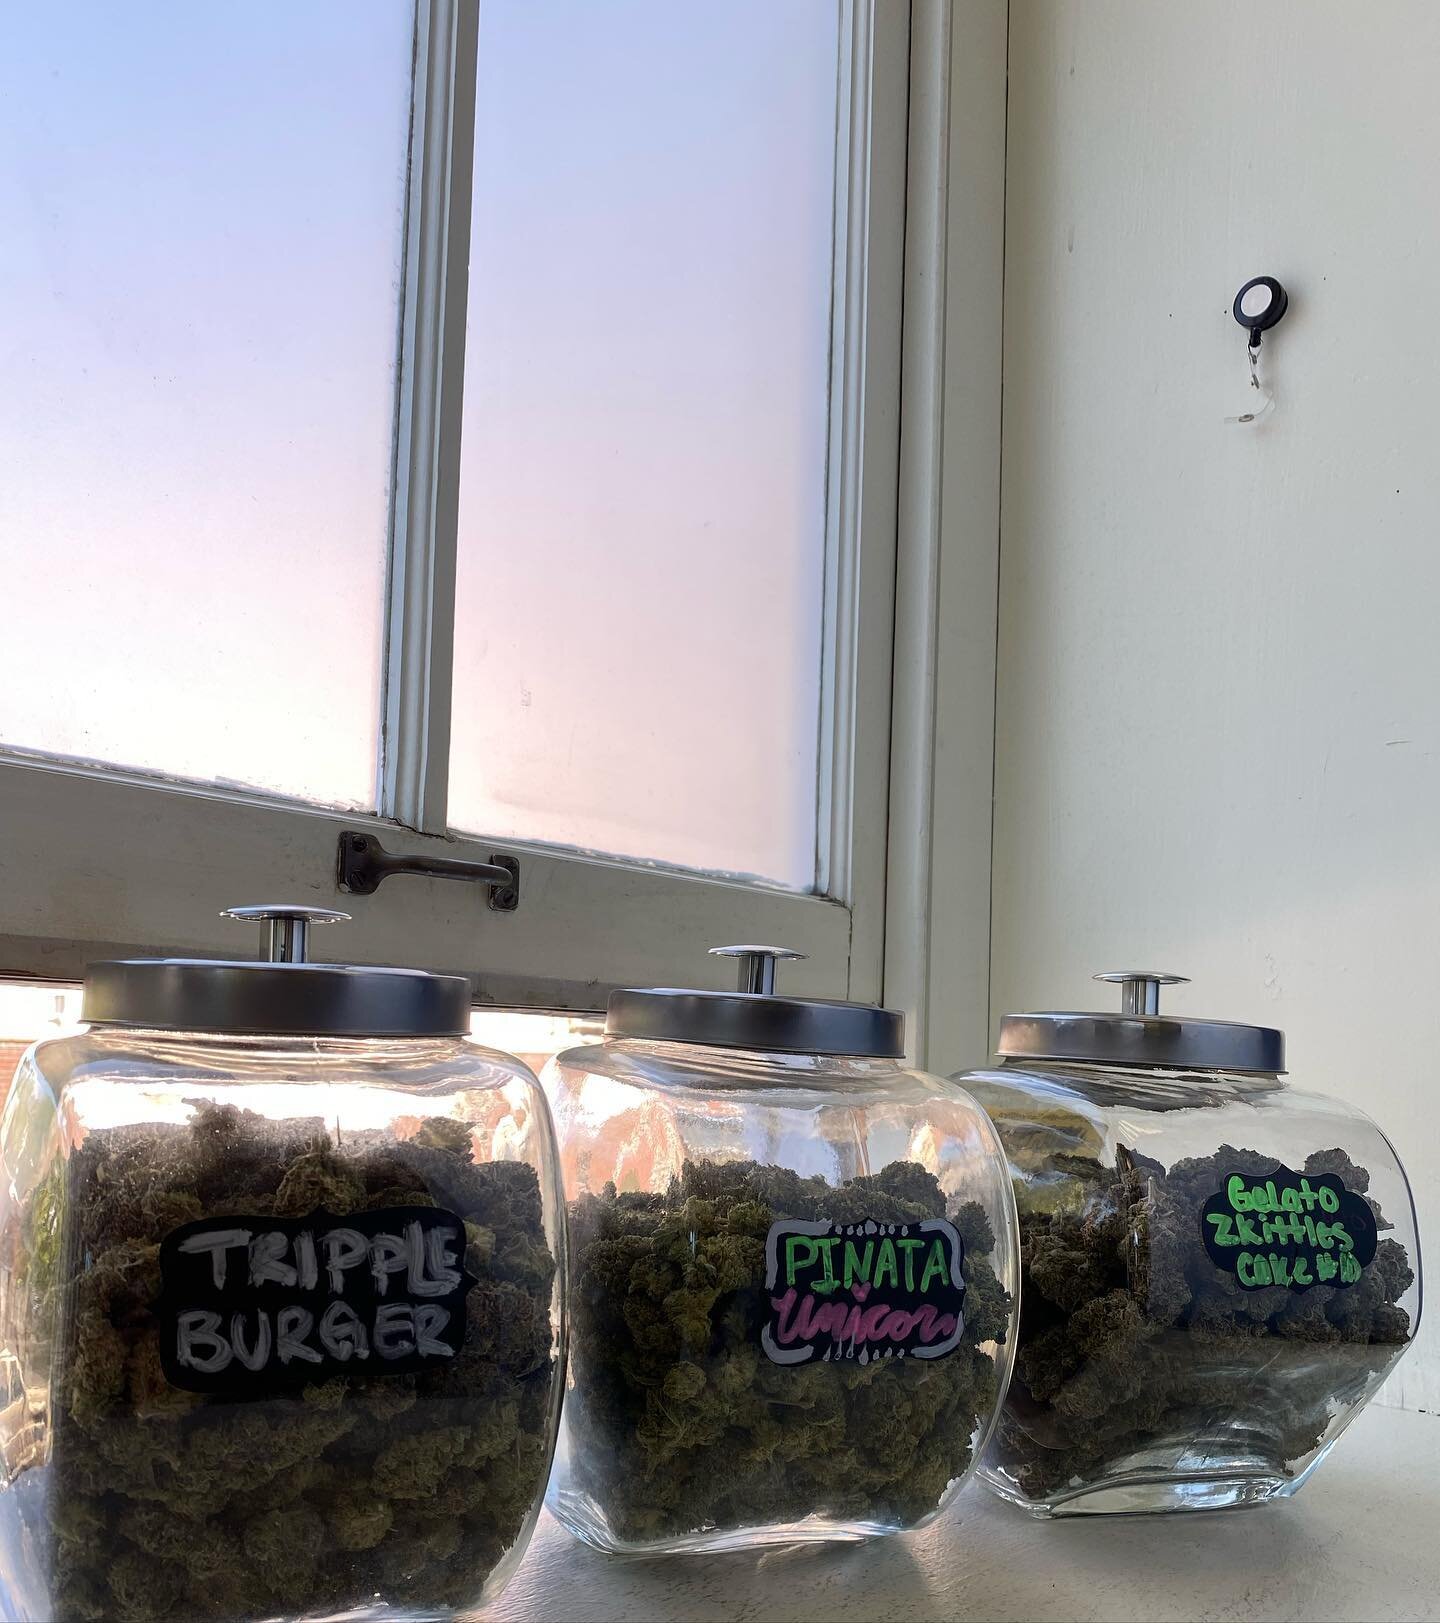 Triple Burger🍔, Pi&ntilde;ata Unicorn🦄, Gelato Zkittles Cake🍰 Back In at Cannabis Corner come snag some delicious medicine 💚